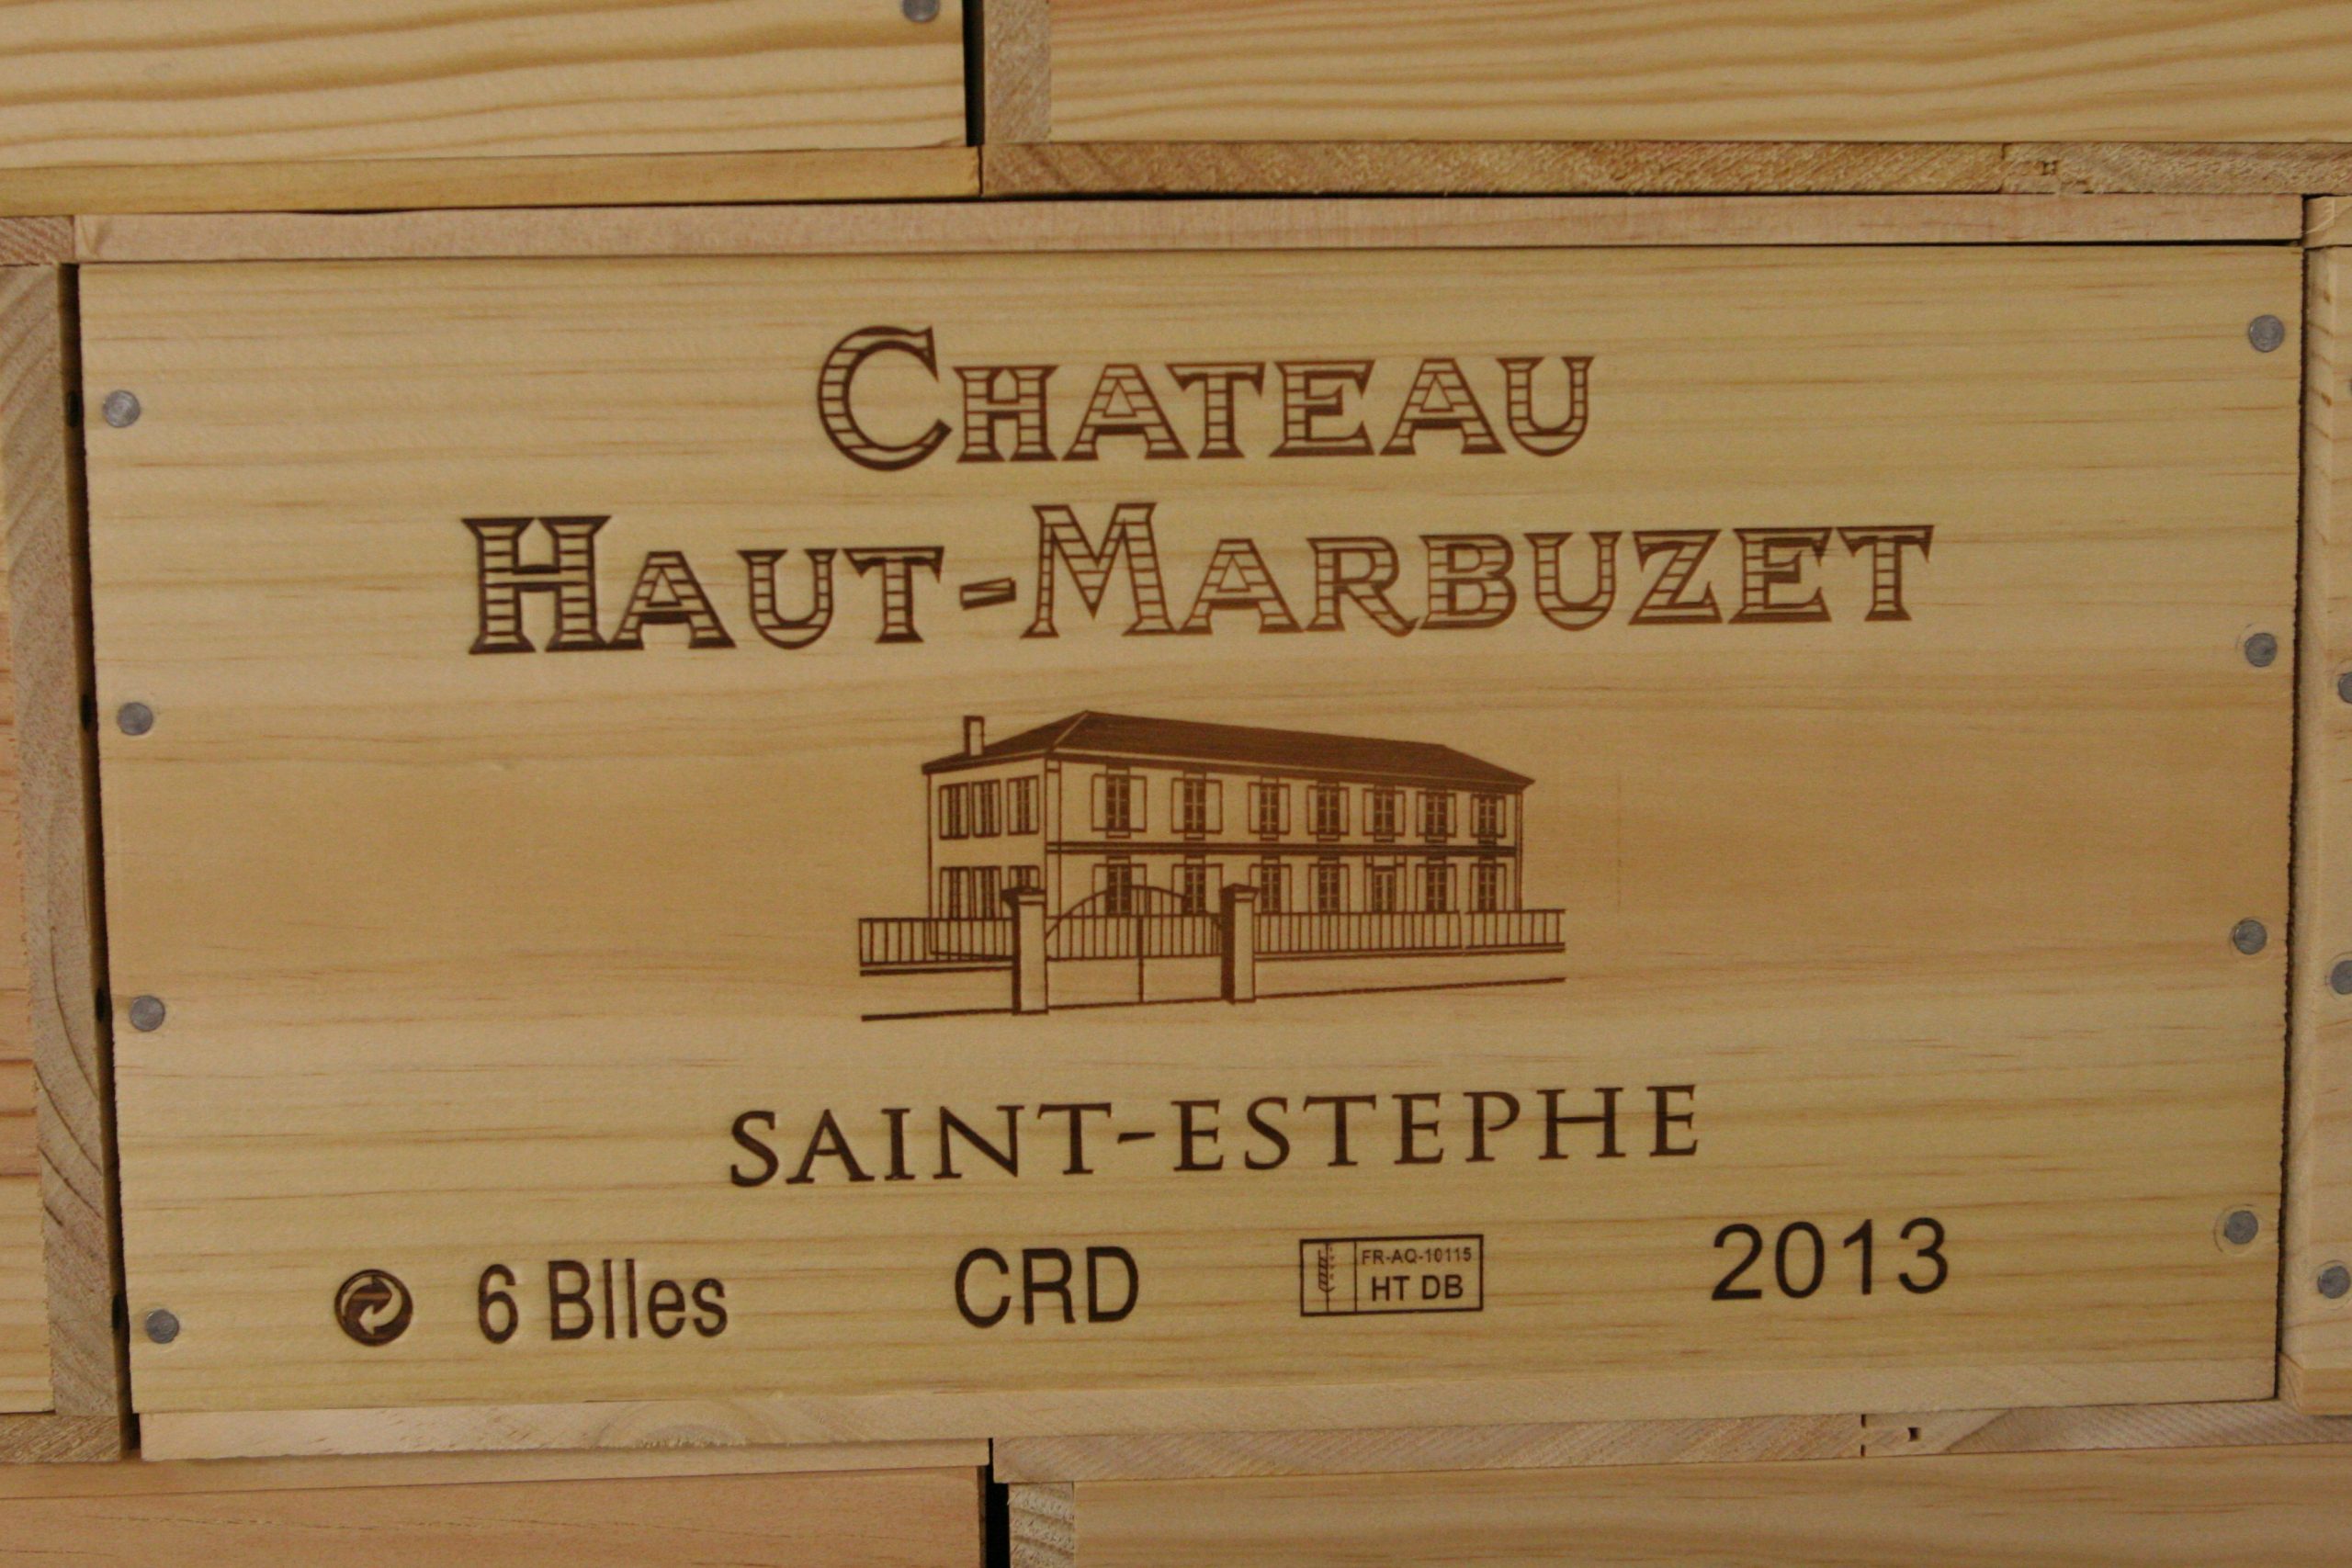 Chateau Haut Marbuzet wooden box